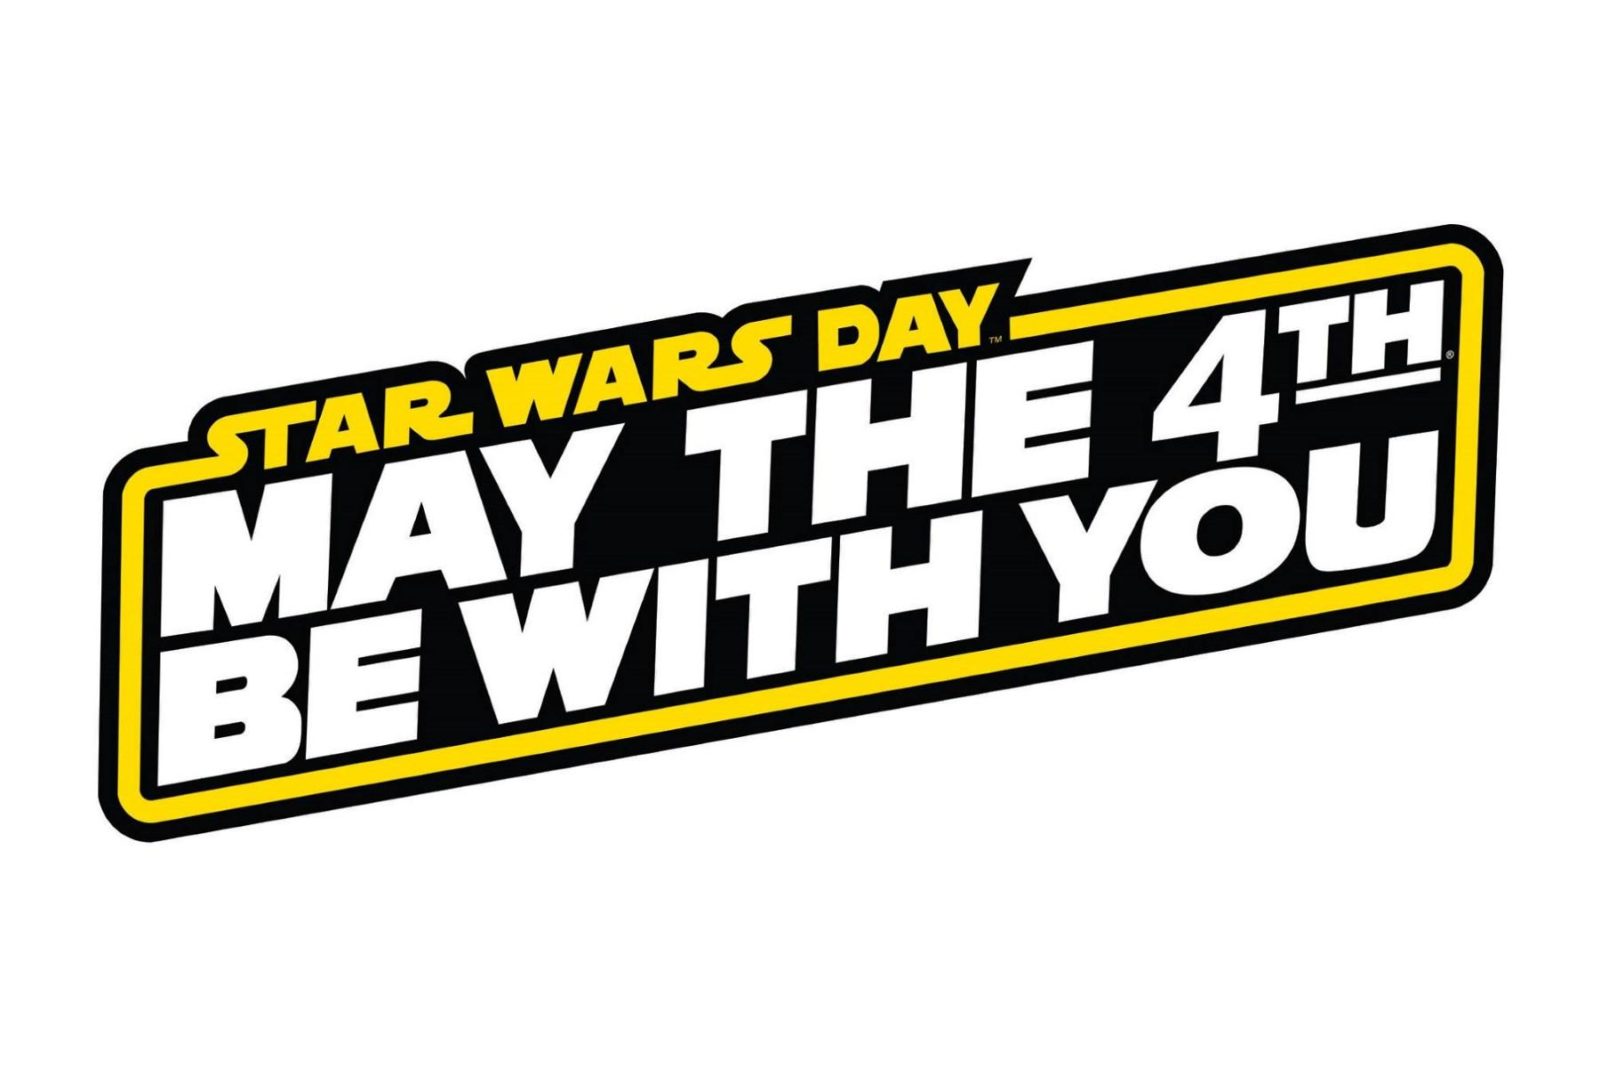 Star Wars Day 2016 – sales!